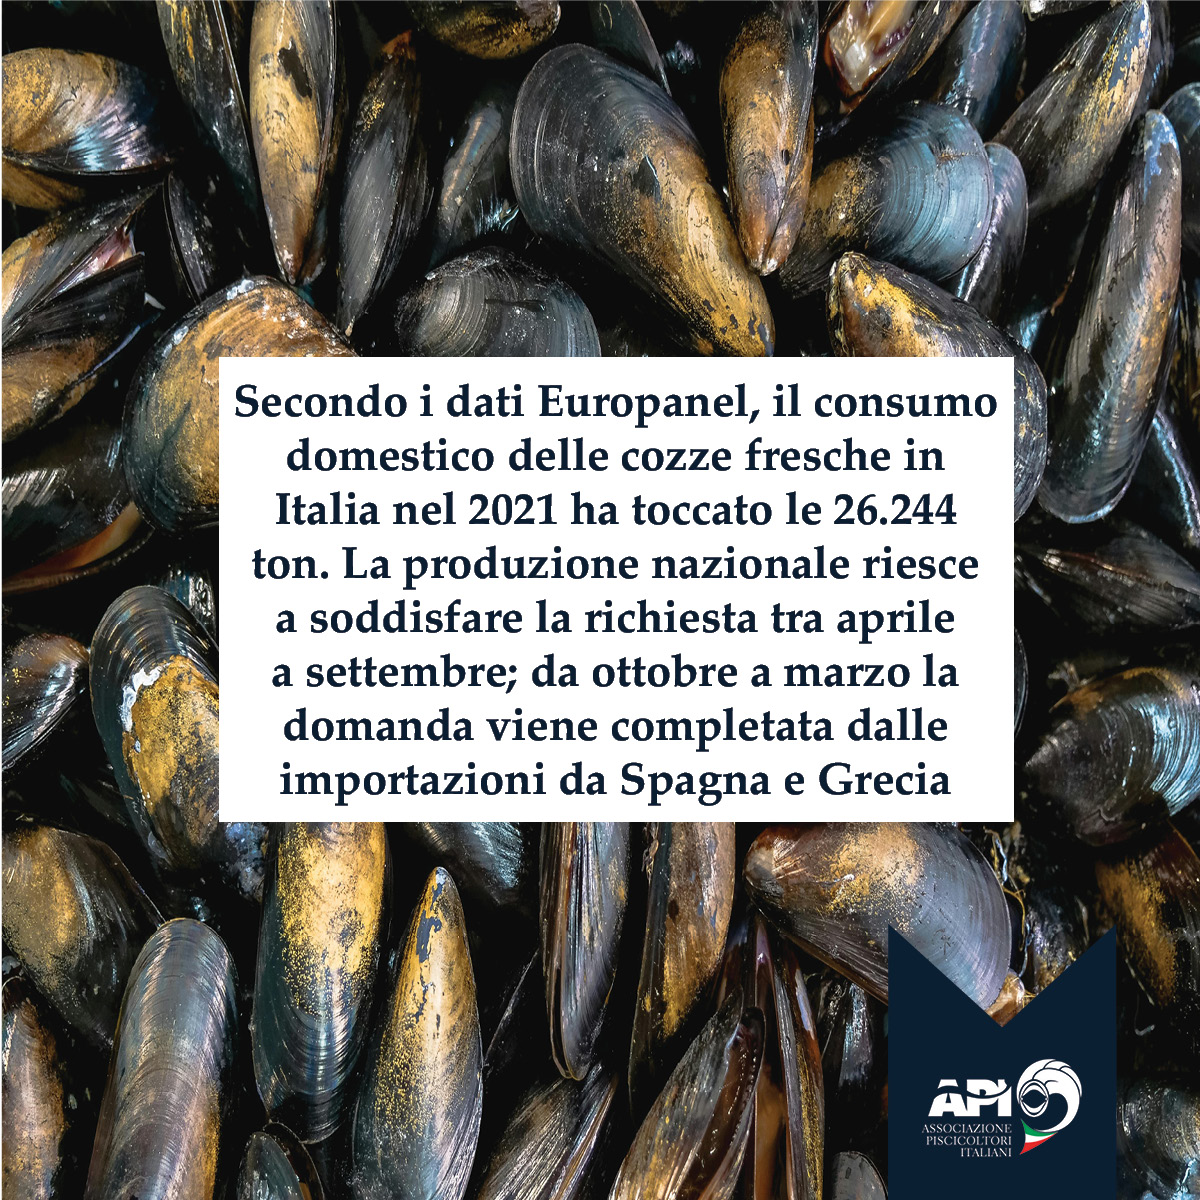 Nel 2021, l'Italia ha consumato 26.244 ton di cozze fresche. Produzione nazionale da aprile a settembre; importazioni da Spagna e Grecia da ottobre a marzo. 📊🦪 #AcquacolturaSostenibile #acquacoltura #Cozze #europanel #sostenibilità #Italia